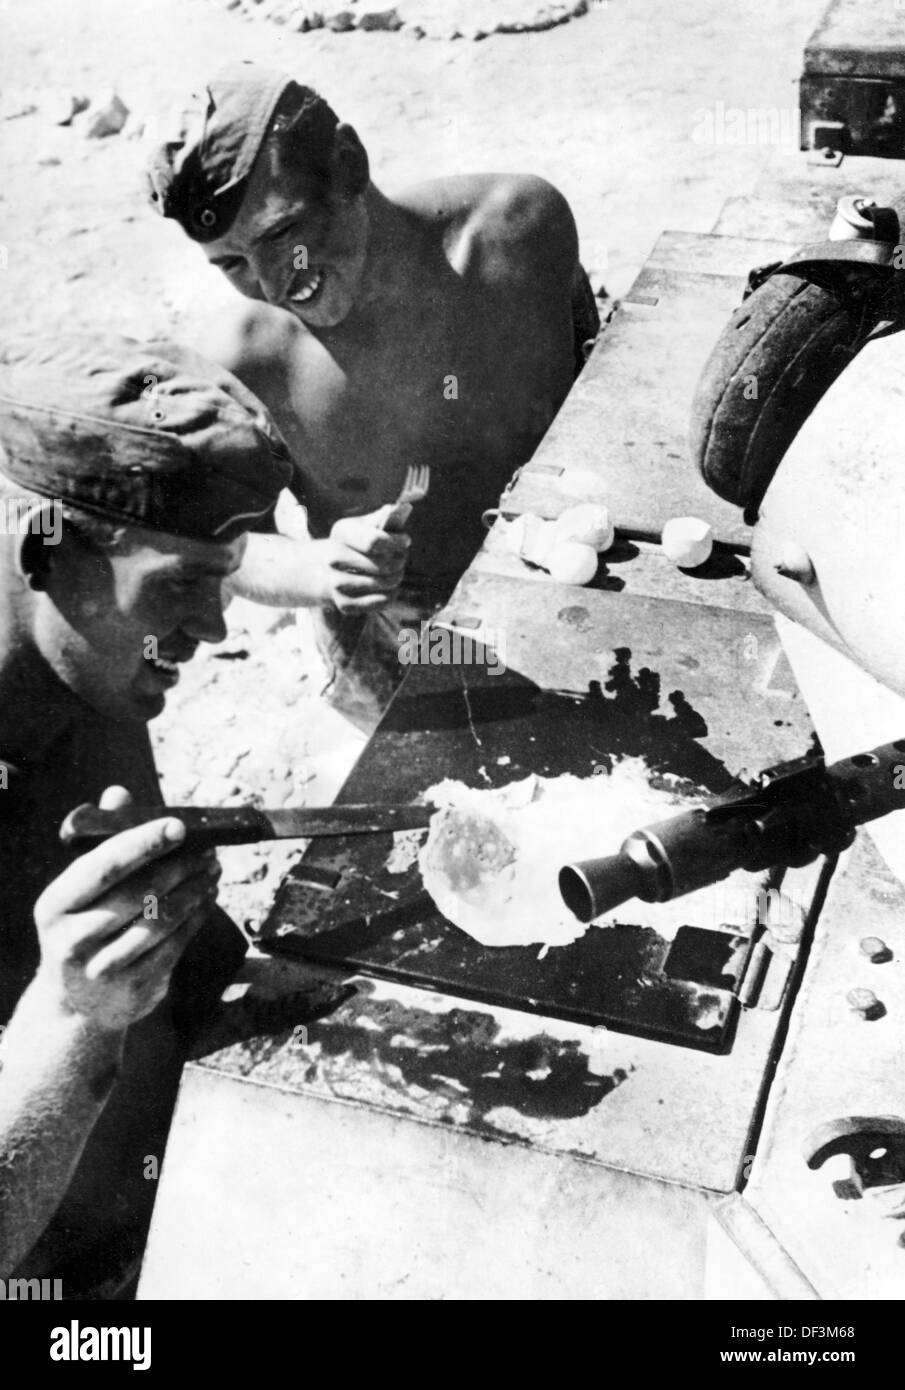 Das Bild der Nazi-Propaganda! Zeigt Soldaten der deutschen Wehrmacht, die ein Ei auf dem heißen Metall eines Panzers braten, veröffentlicht am 11. Oktober 1941. Ort unbekannt. Fotoarchiv für Zeitgeschichte Stockfoto